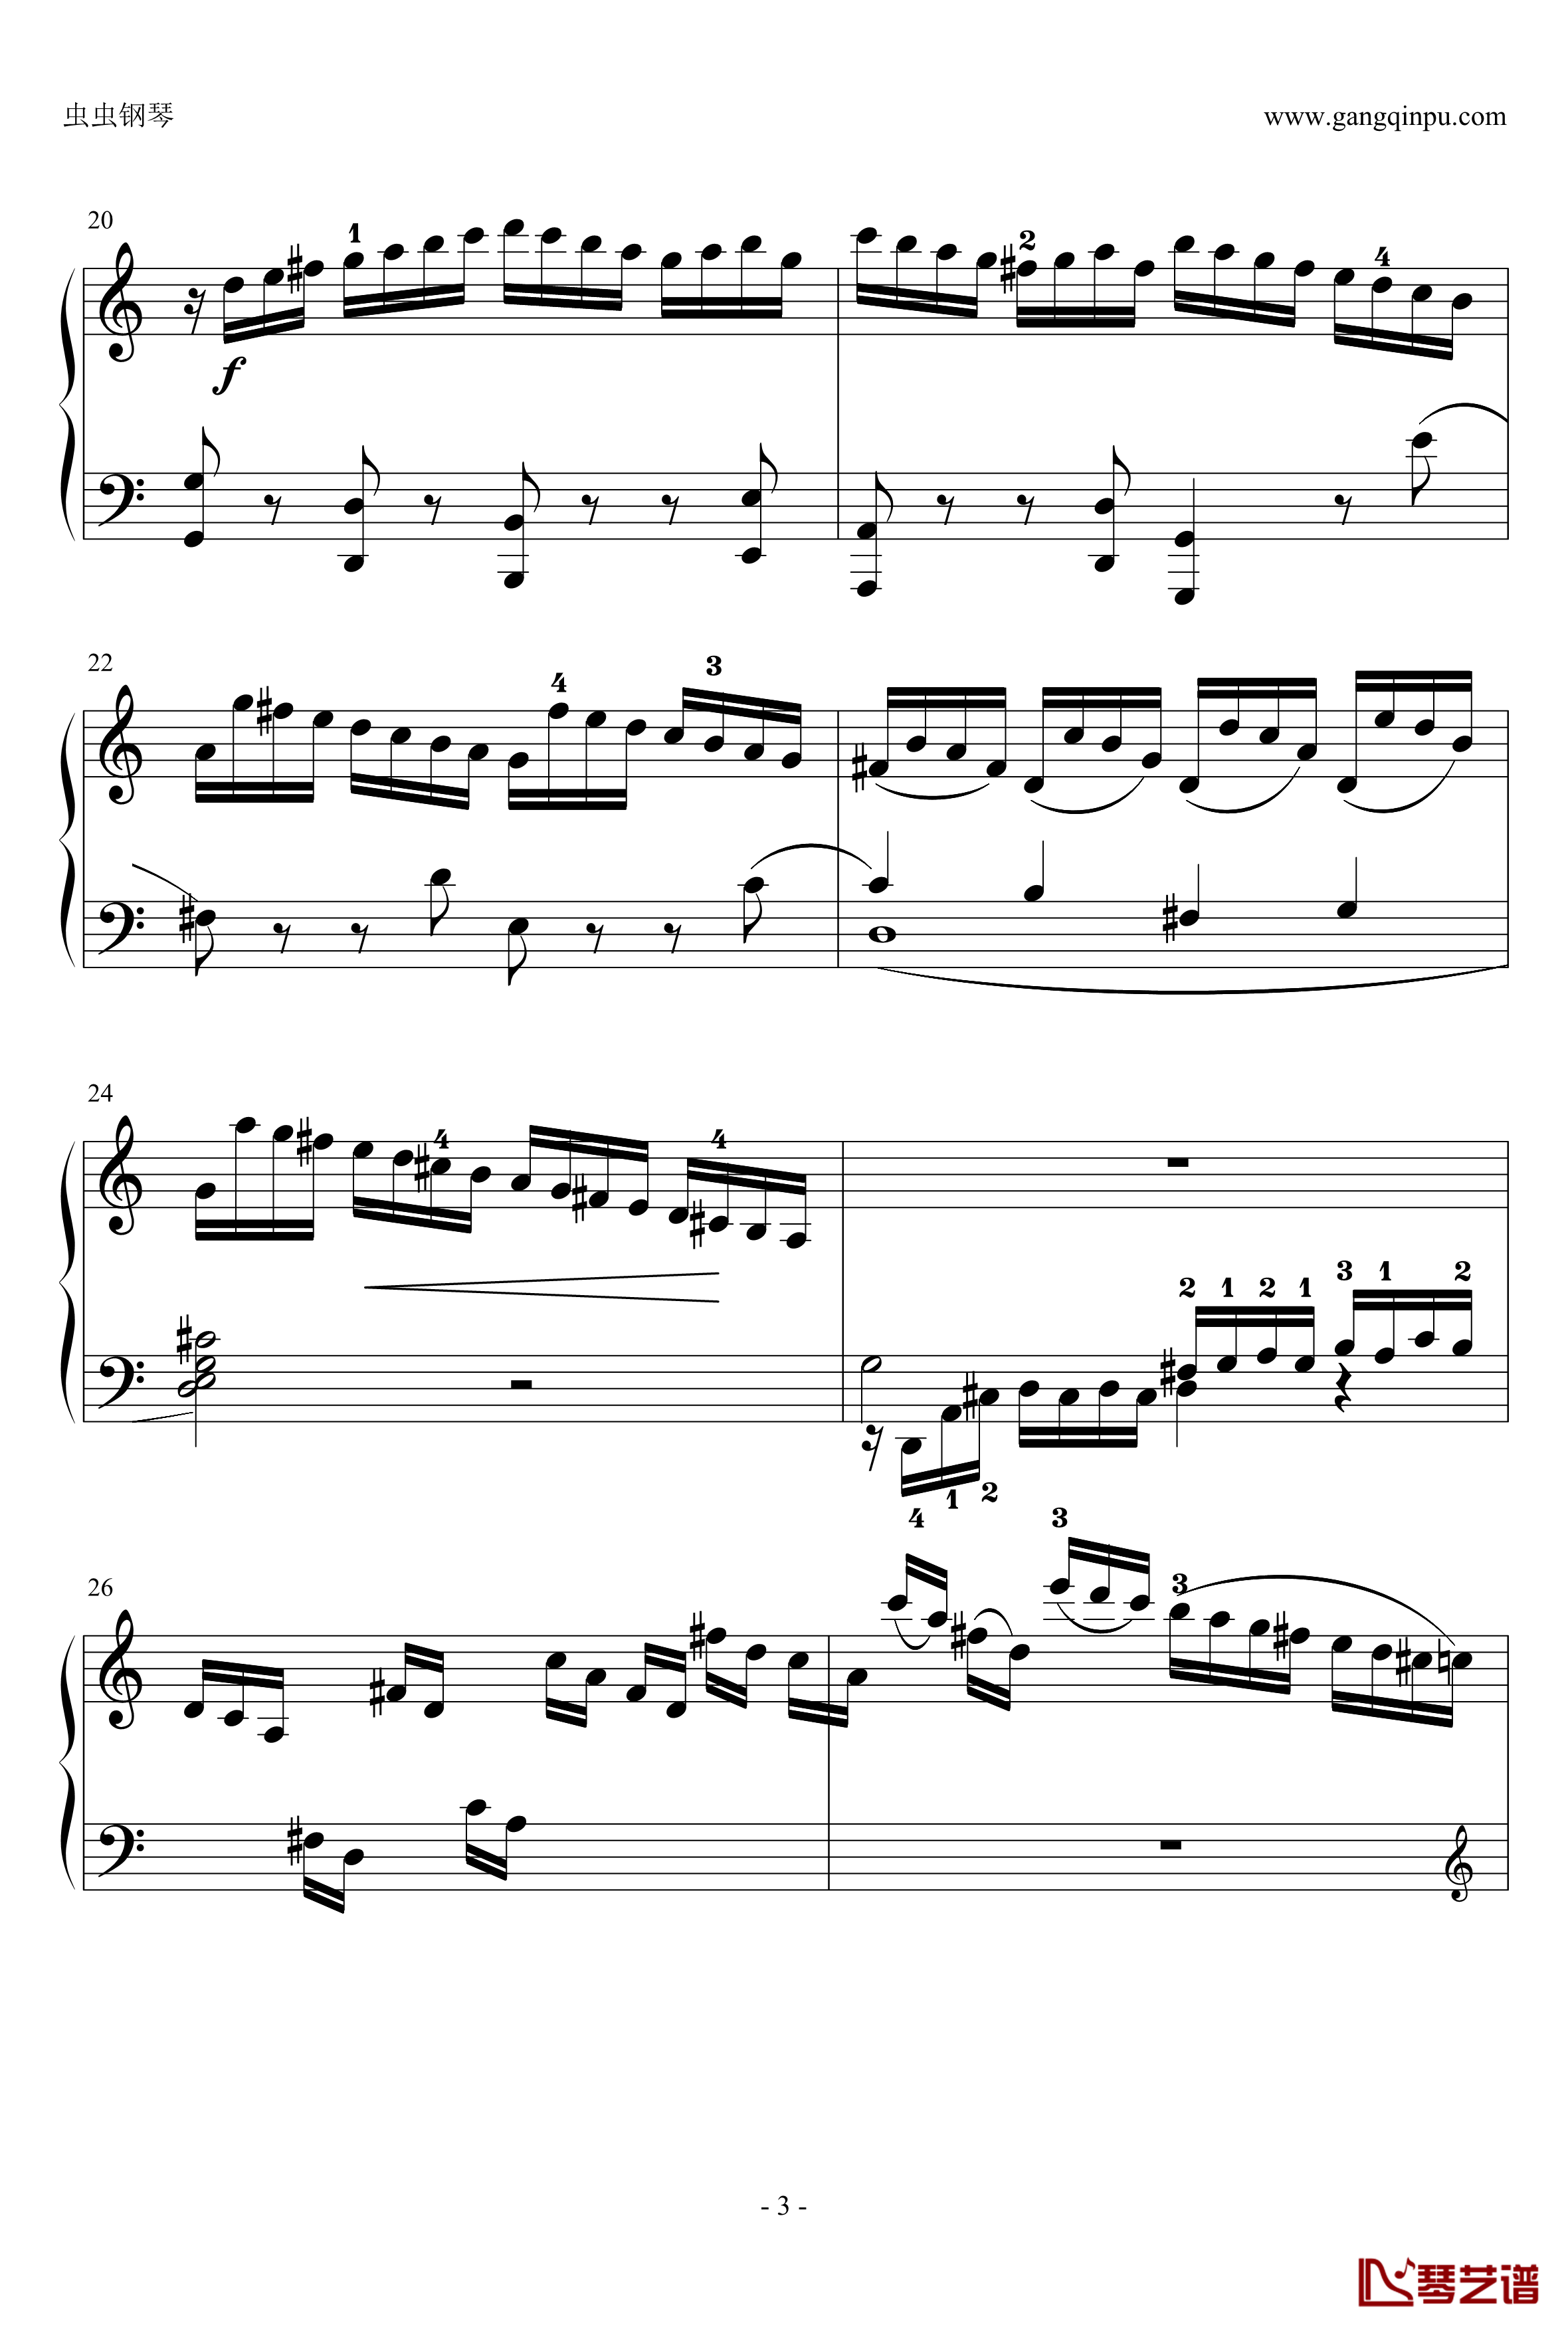 C大调奏鸣曲钢琴谱第一乐章-海顿3